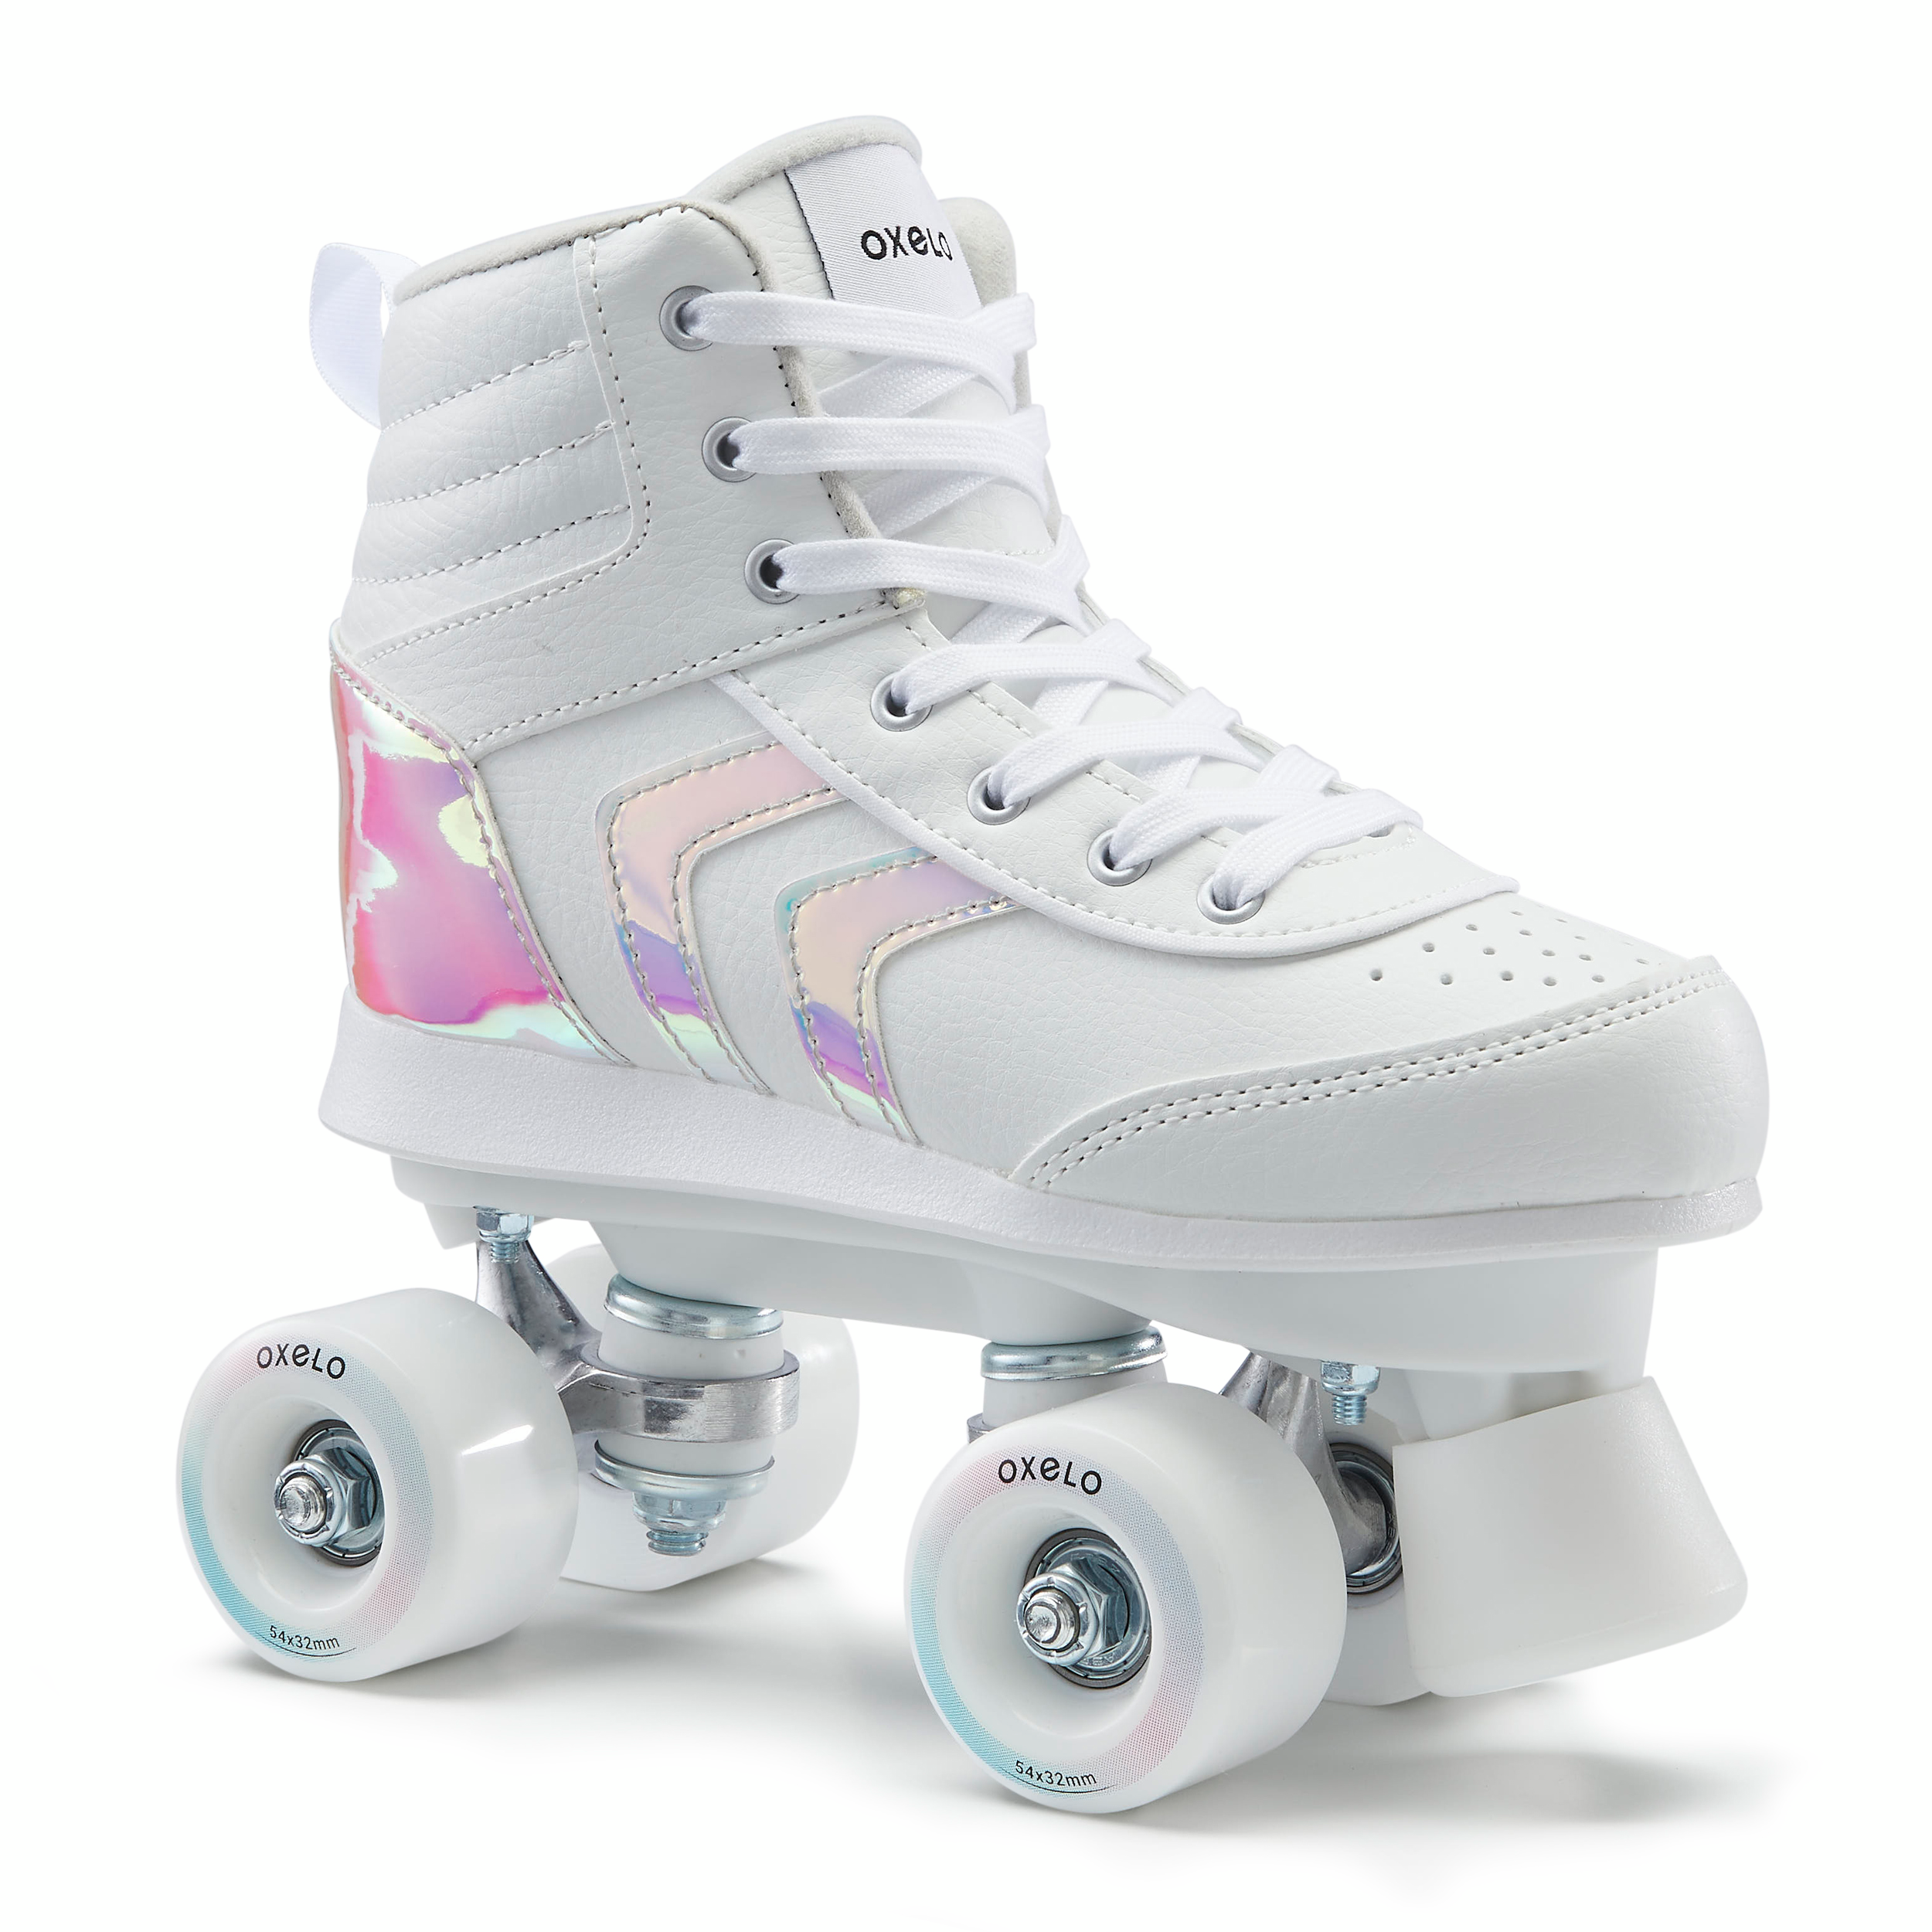 Rollers en ligne pour patineurs avancés avec roues en polyuréthane moderne